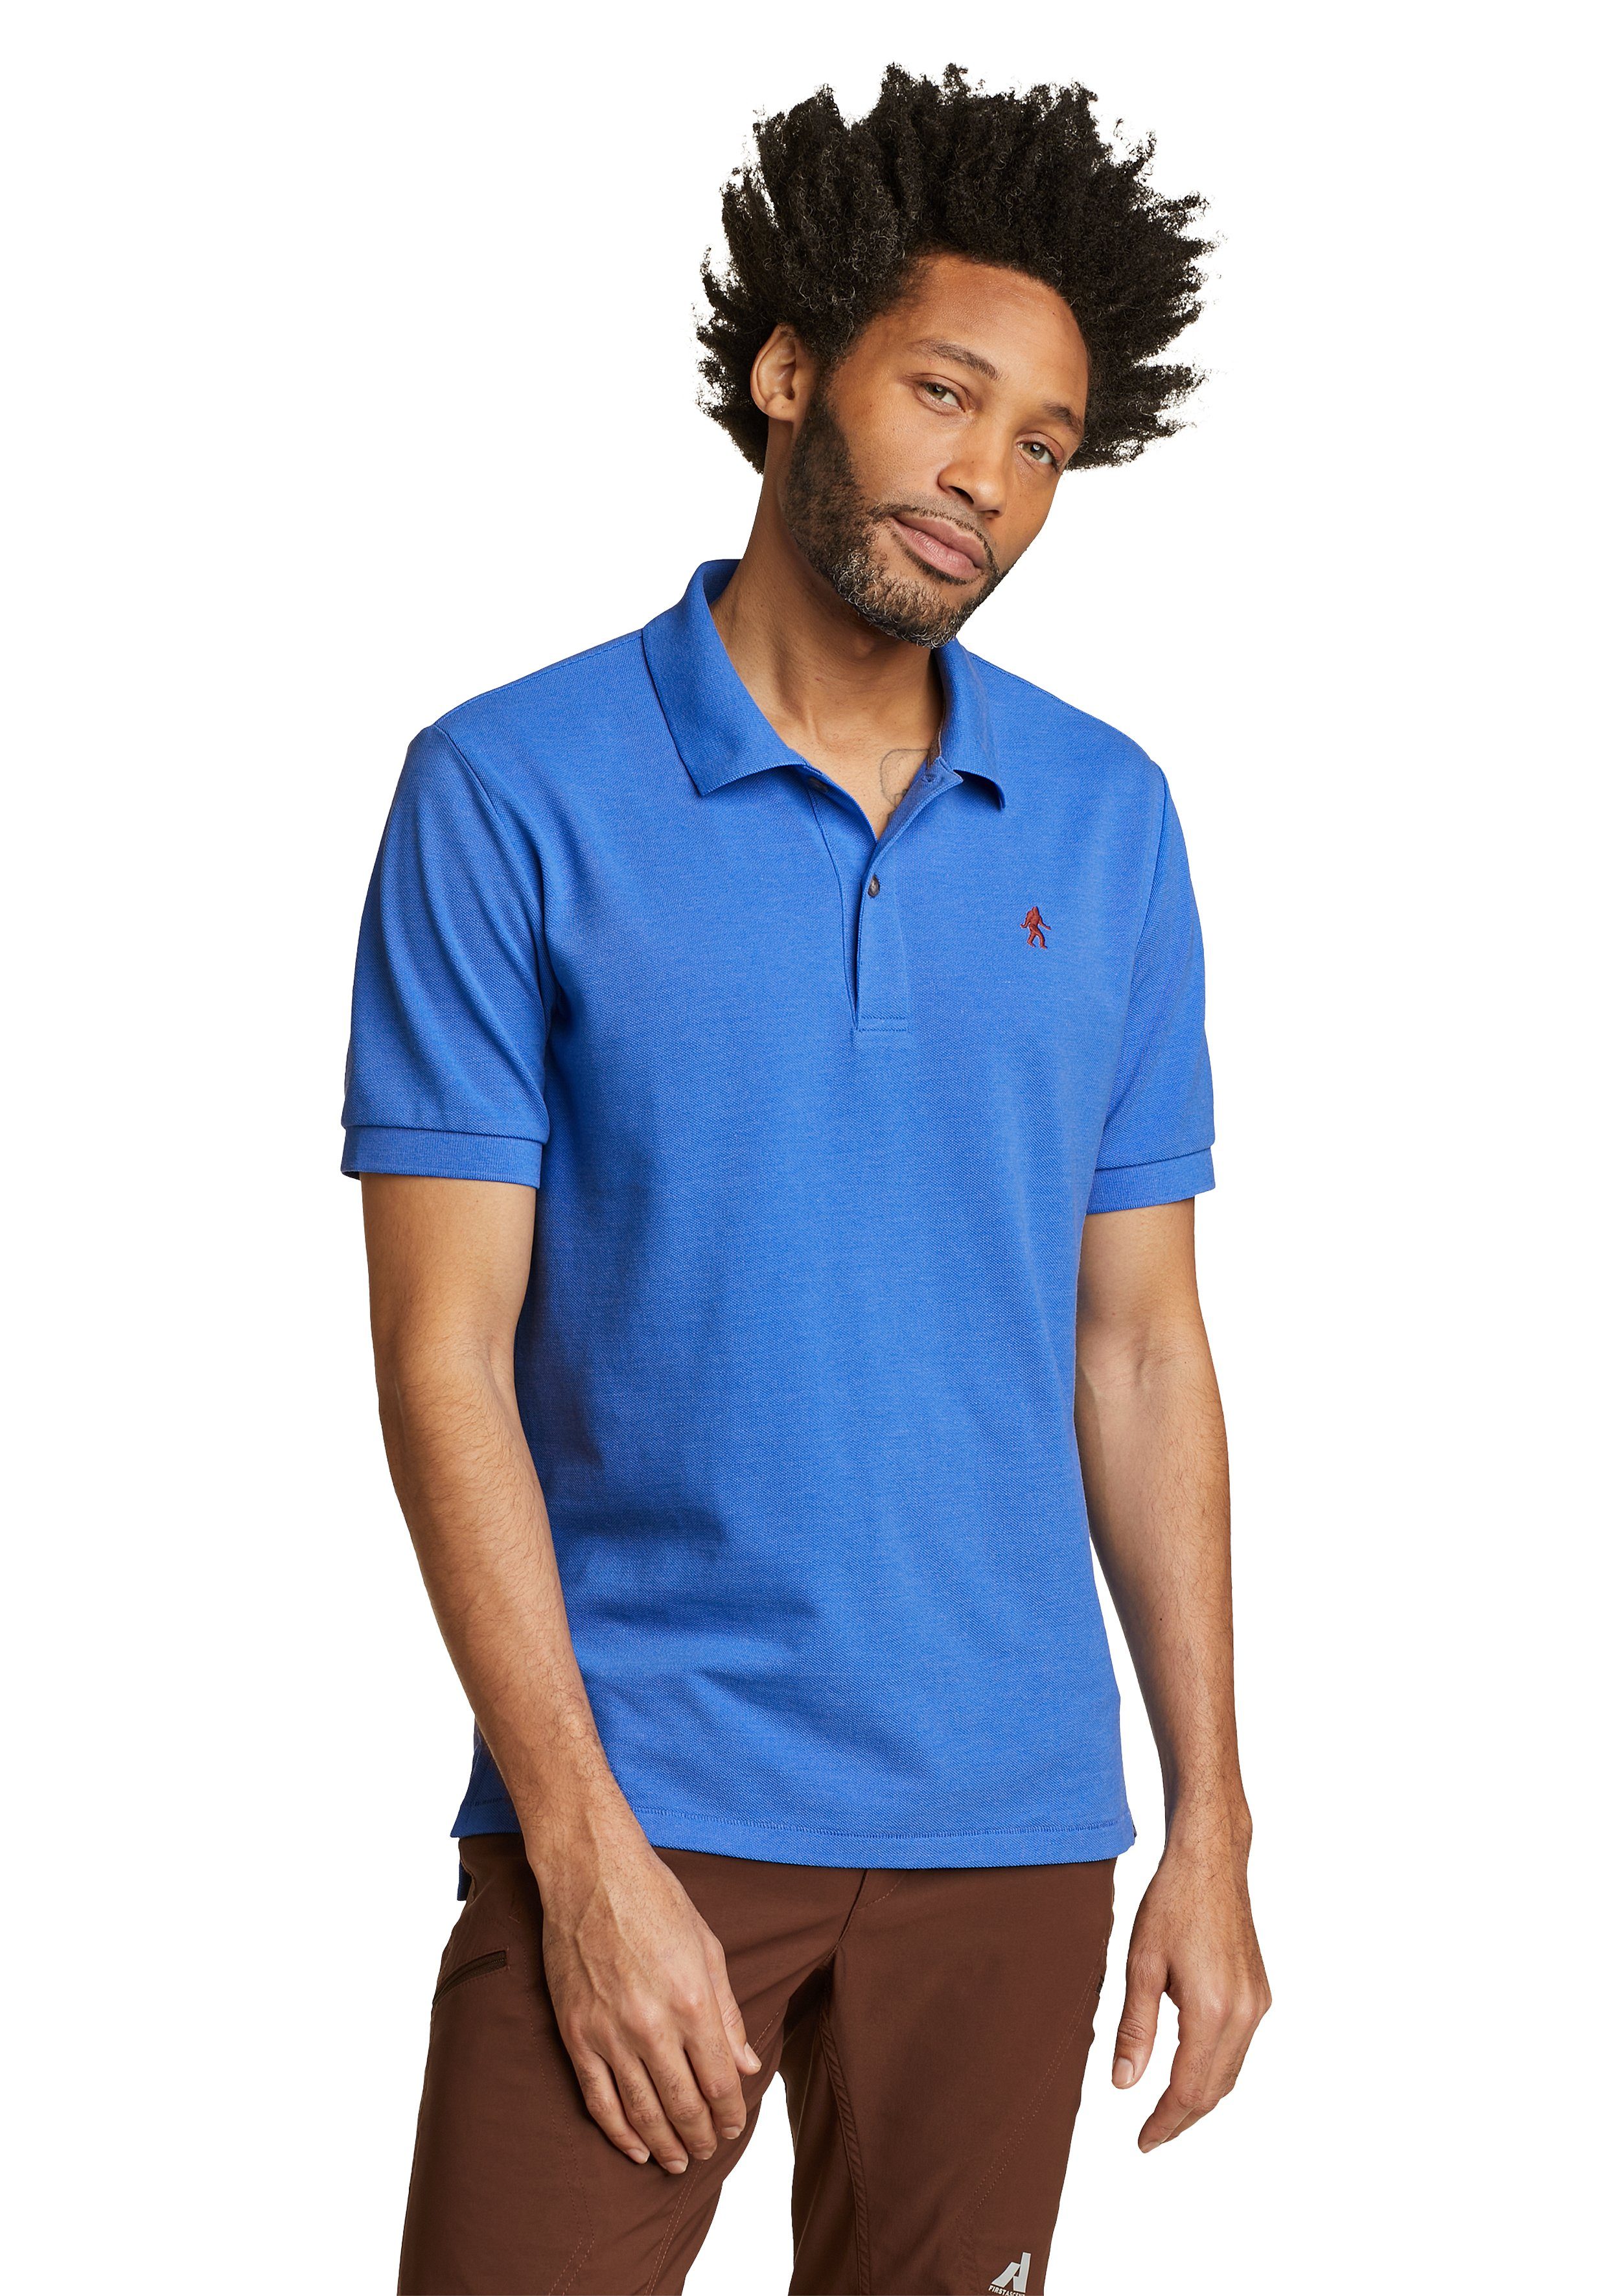 Eddie Bauer Poloshirt - Pro Brilliantes Poloshirt Blau Field bestickt